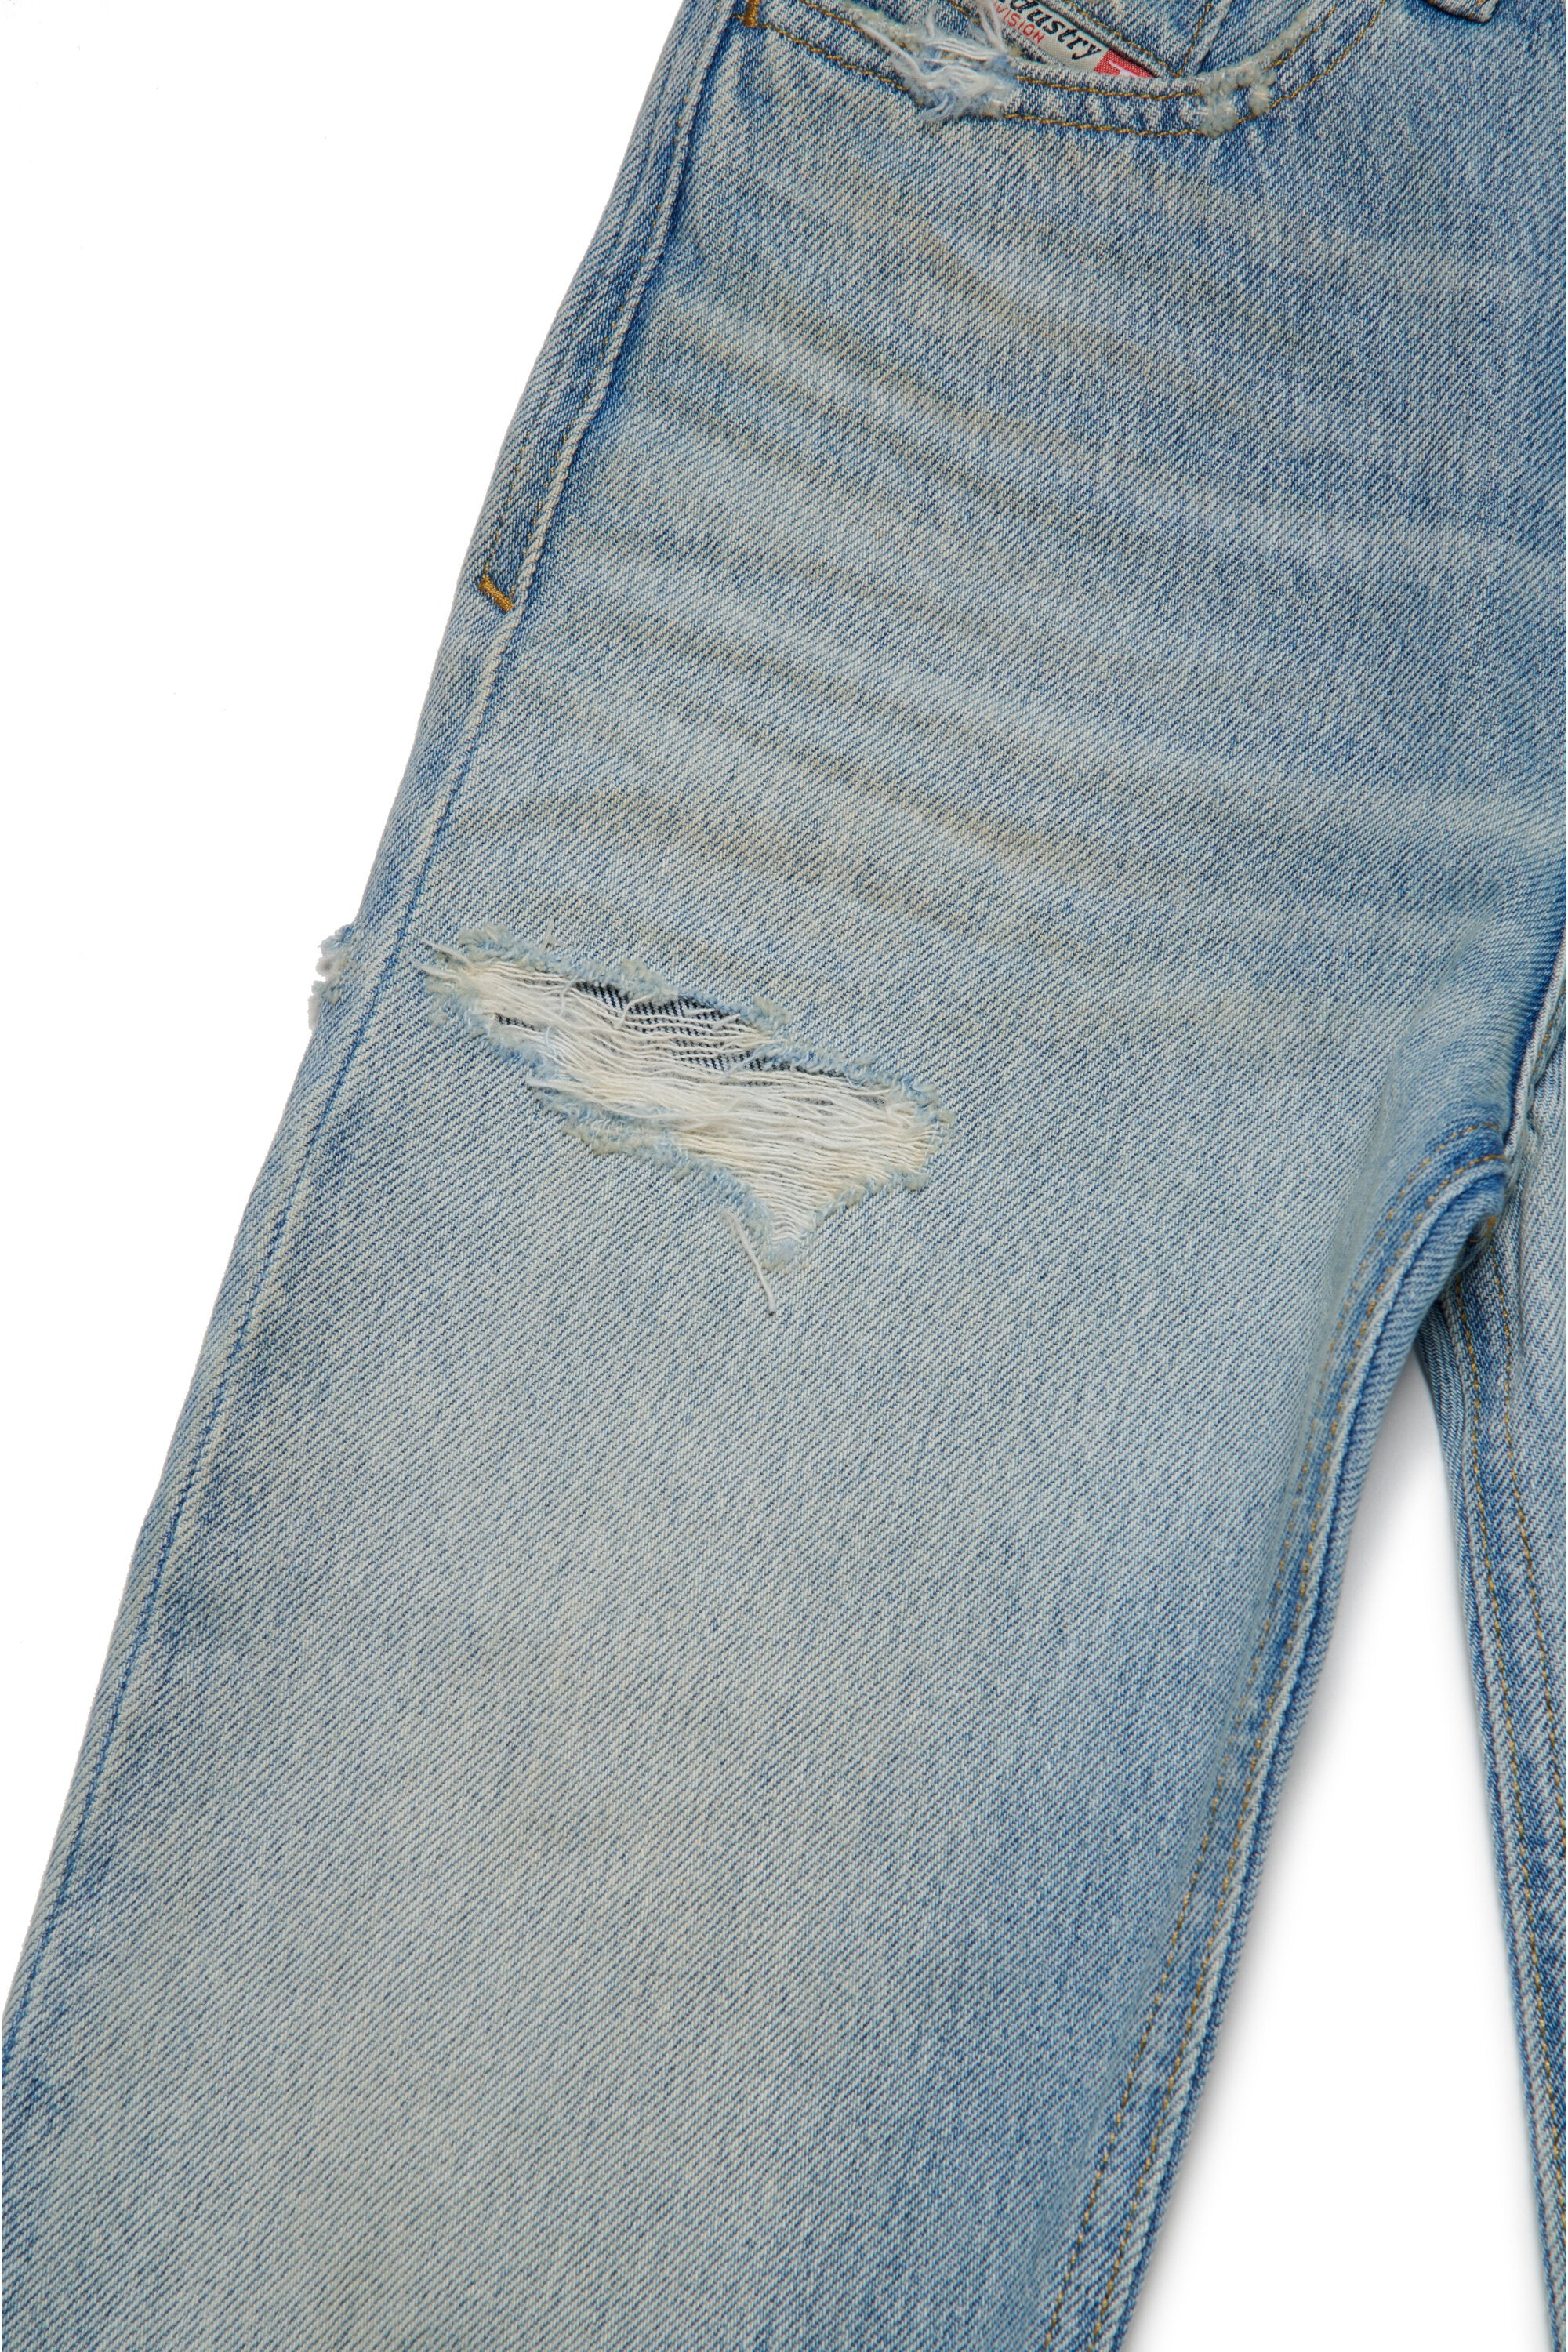 Jeans boyfriend chiaro con rotture - 2016 D-Air